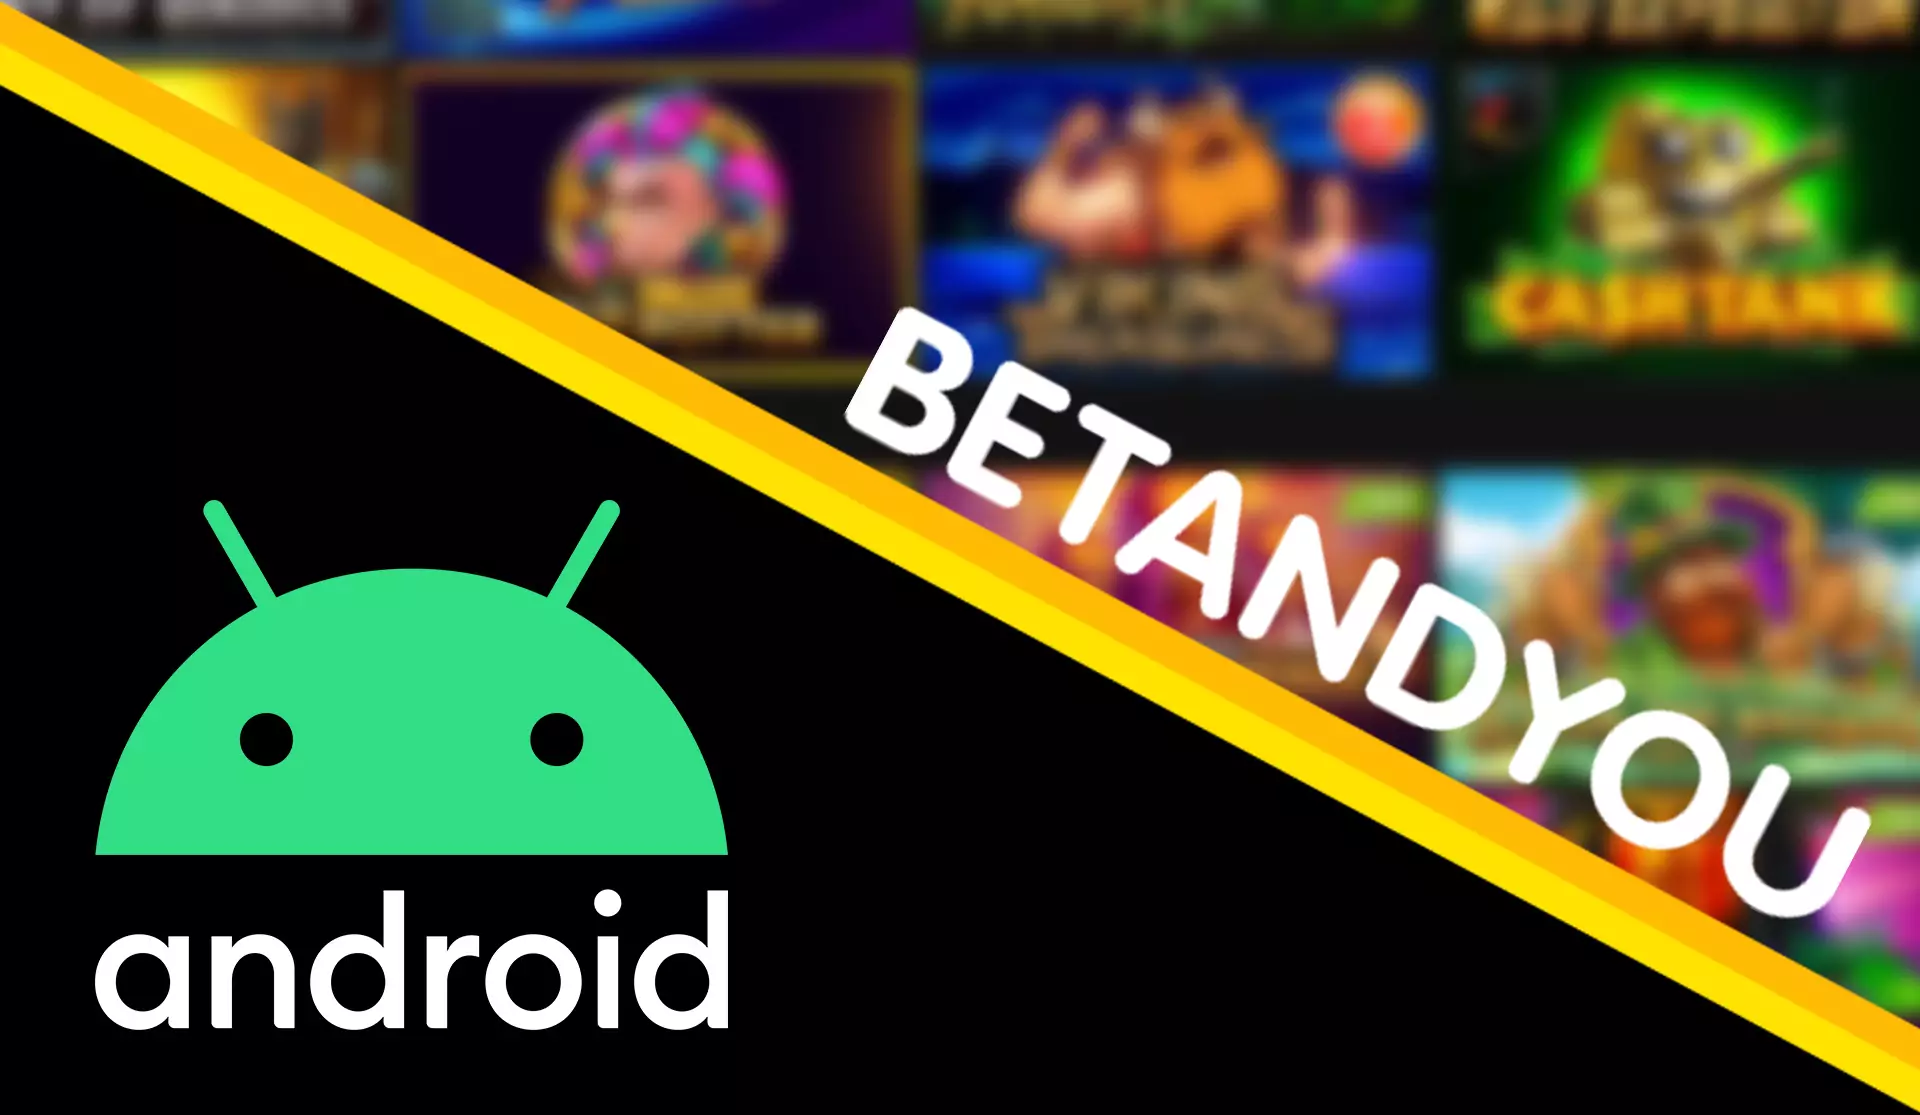 Betandyou ऐप अधिकांश Android स्मार्टफोन पर बहुत अच्छा काम करता है।